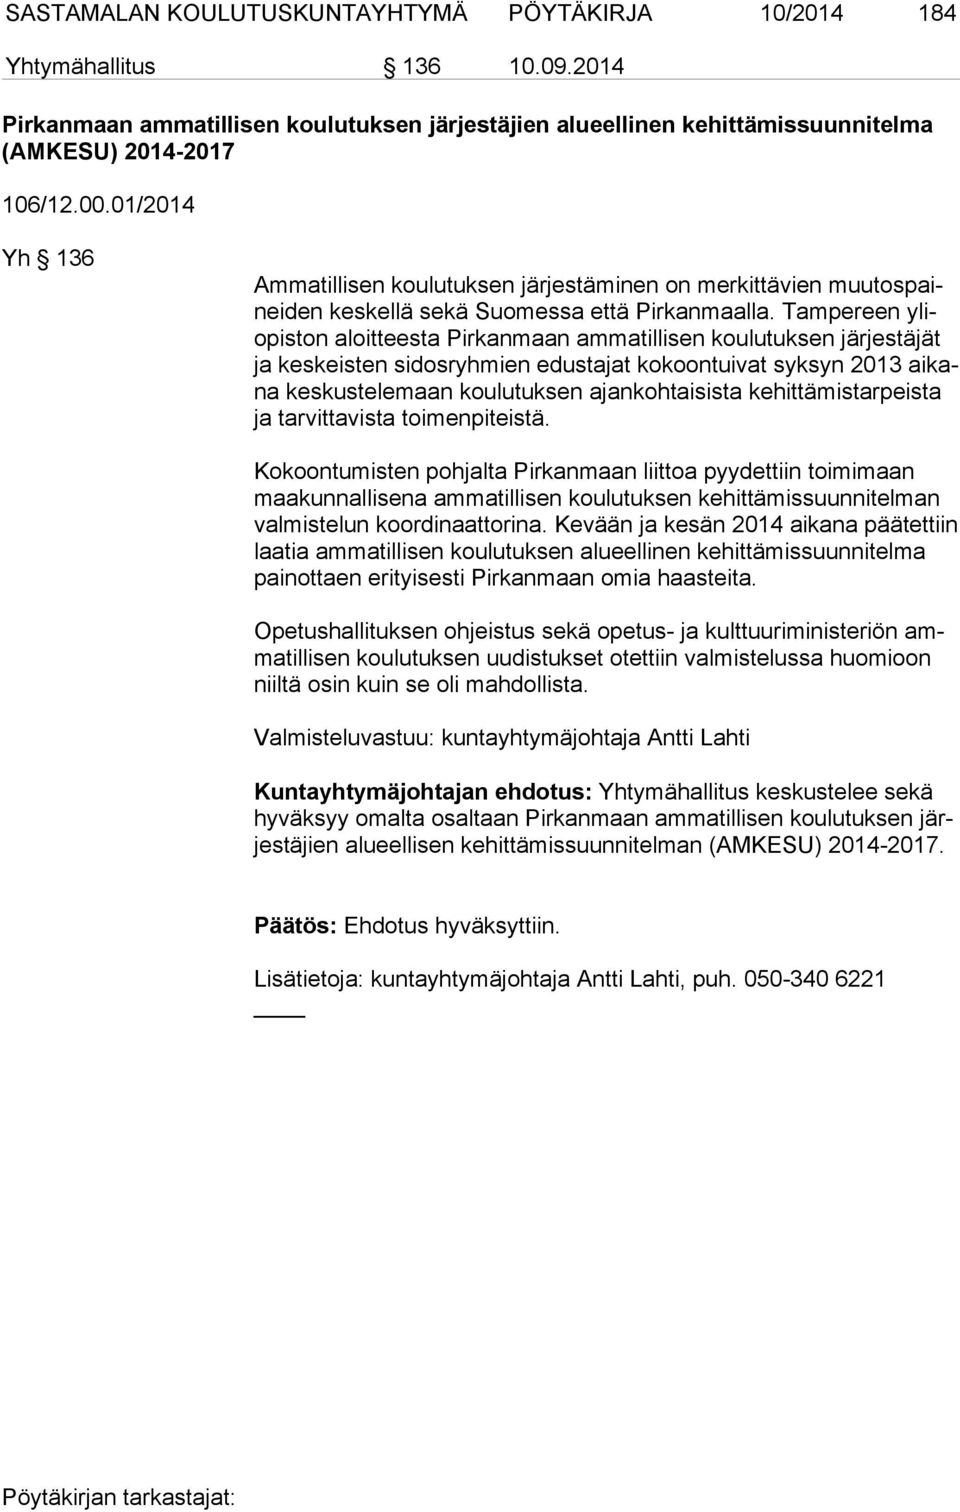 Tampereen yliopis ton aloitteesta Pirkanmaan ammatillisen koulutuksen järjestäjät ja keskeisten sidosryhmien edustajat kokoontuivat syksyn 2013 ai kana keskustelemaan koulutuksen ajankohtaisista